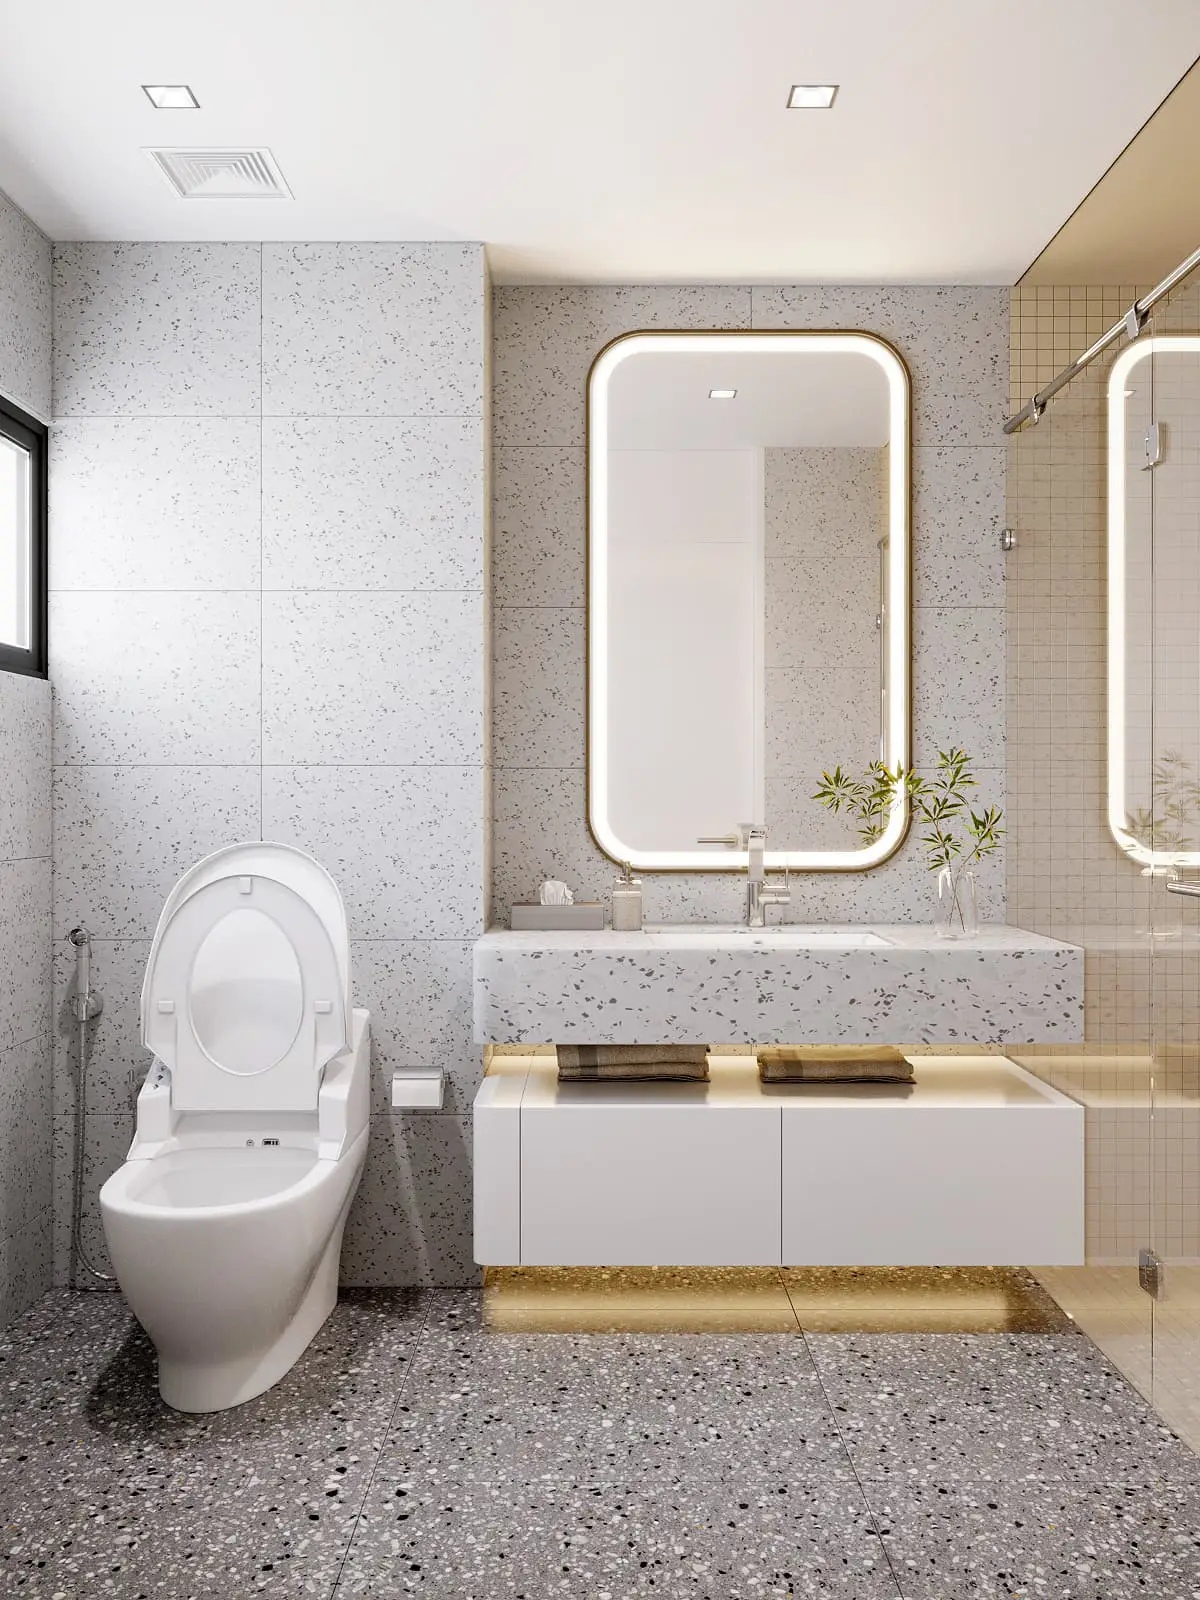 Chiêm ngưỡng mẫu phòng tắm nhỏ sử dụng đá ốp sang trọng